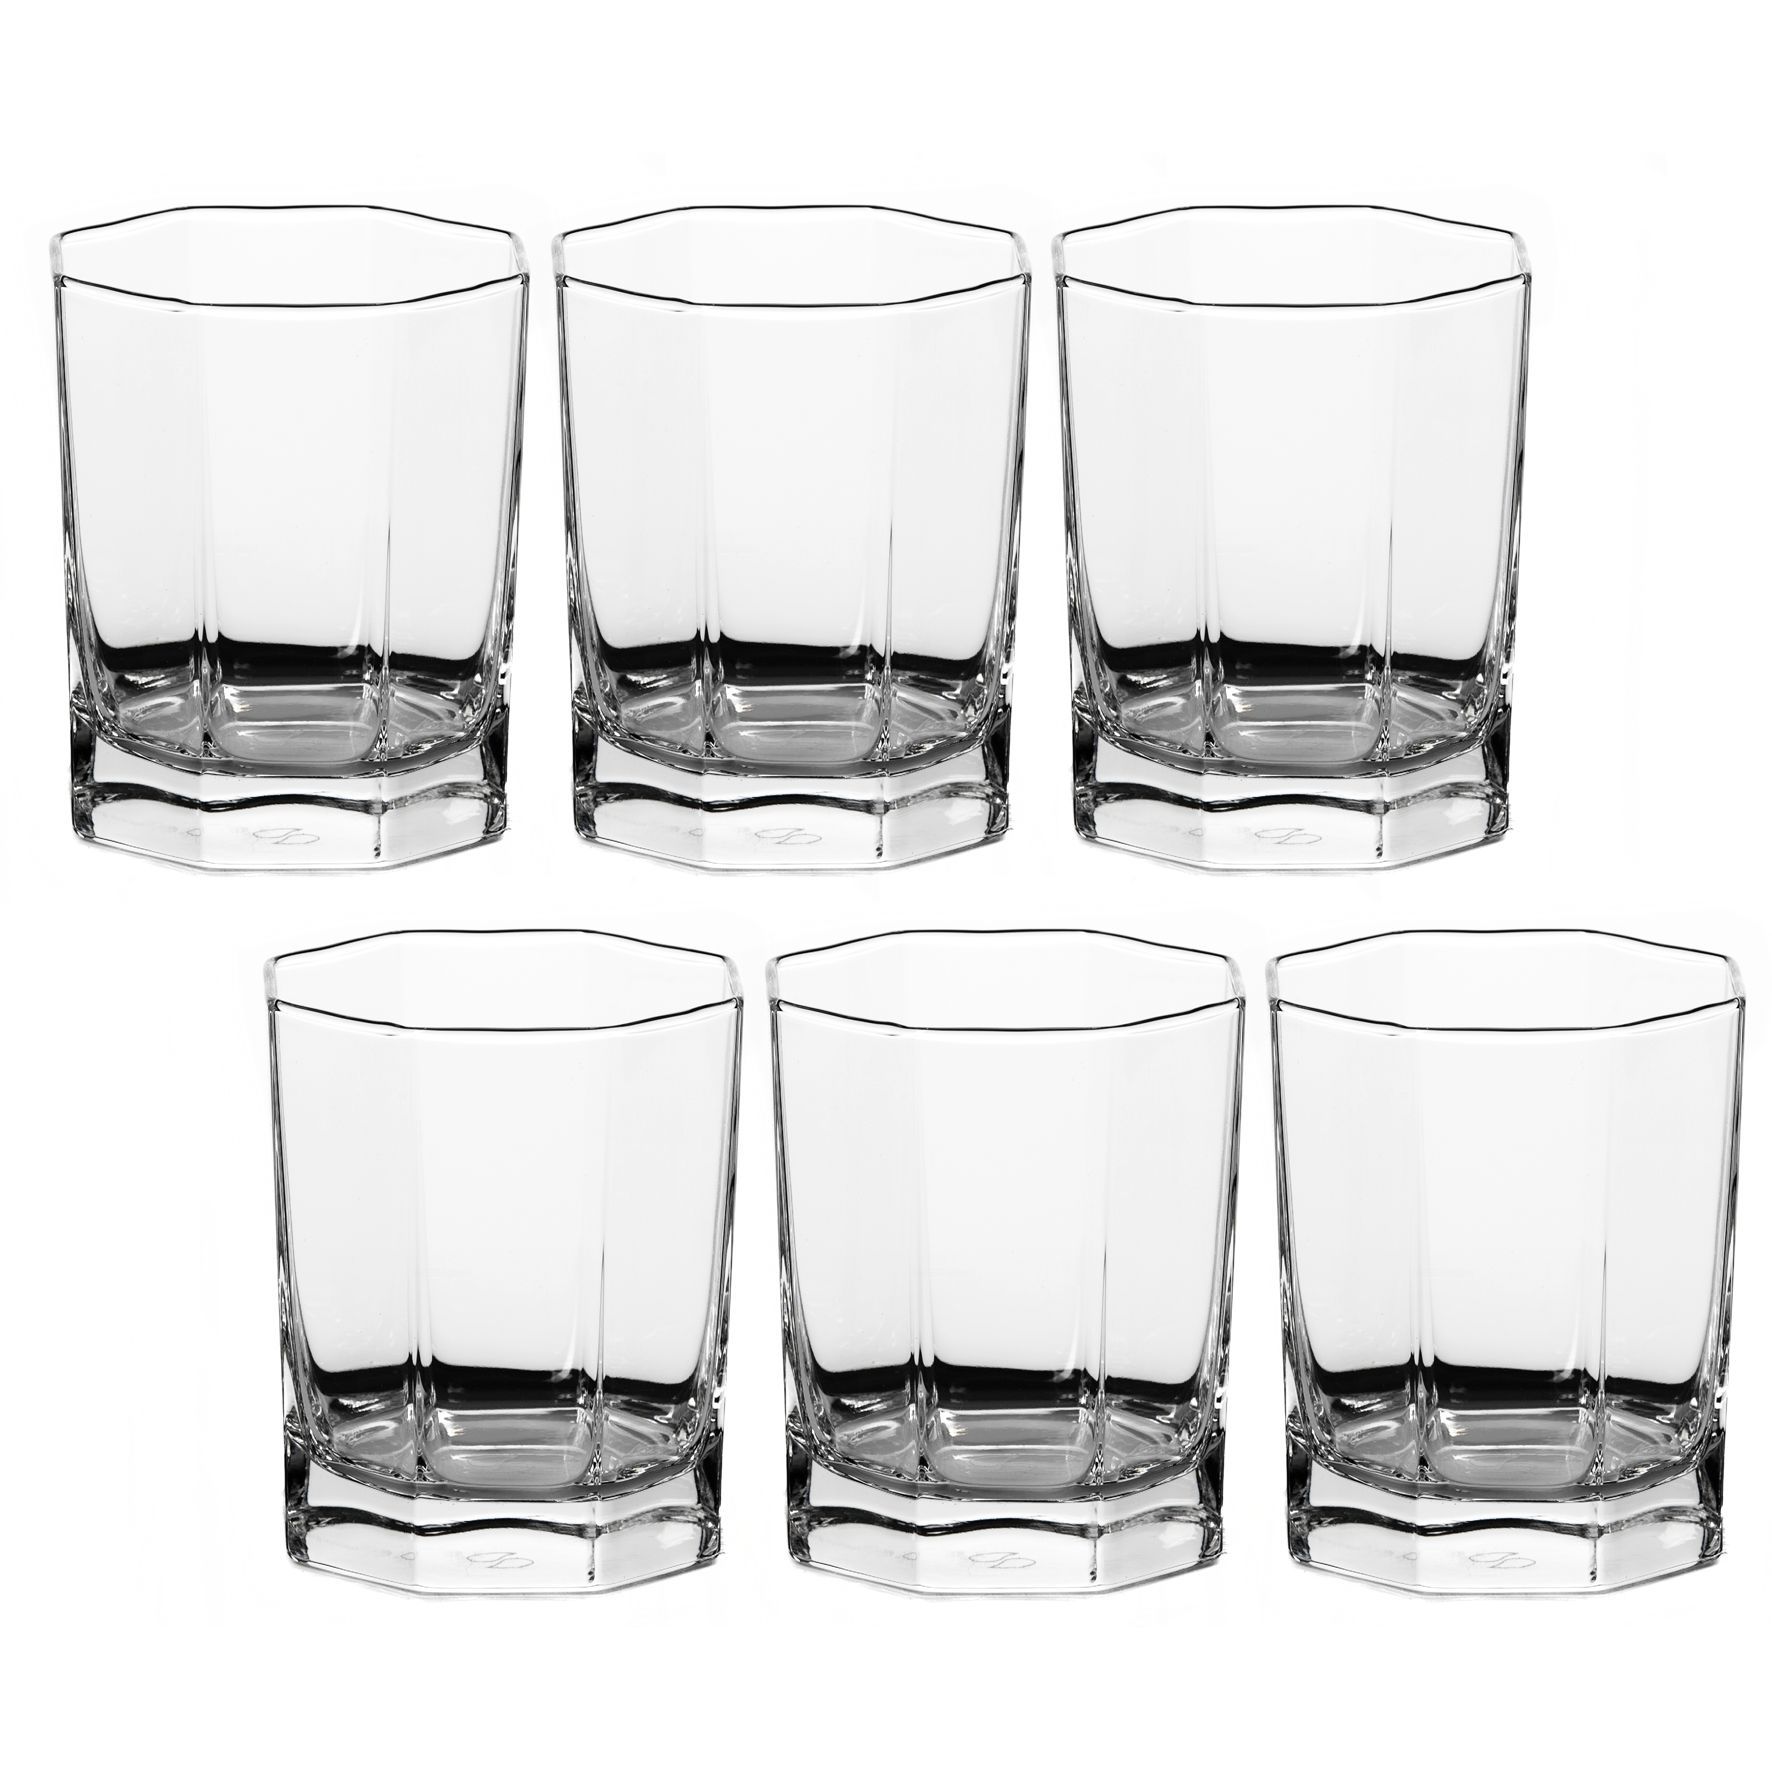 На столе в ряд стоят 6 стаканов первые три пустые а последние